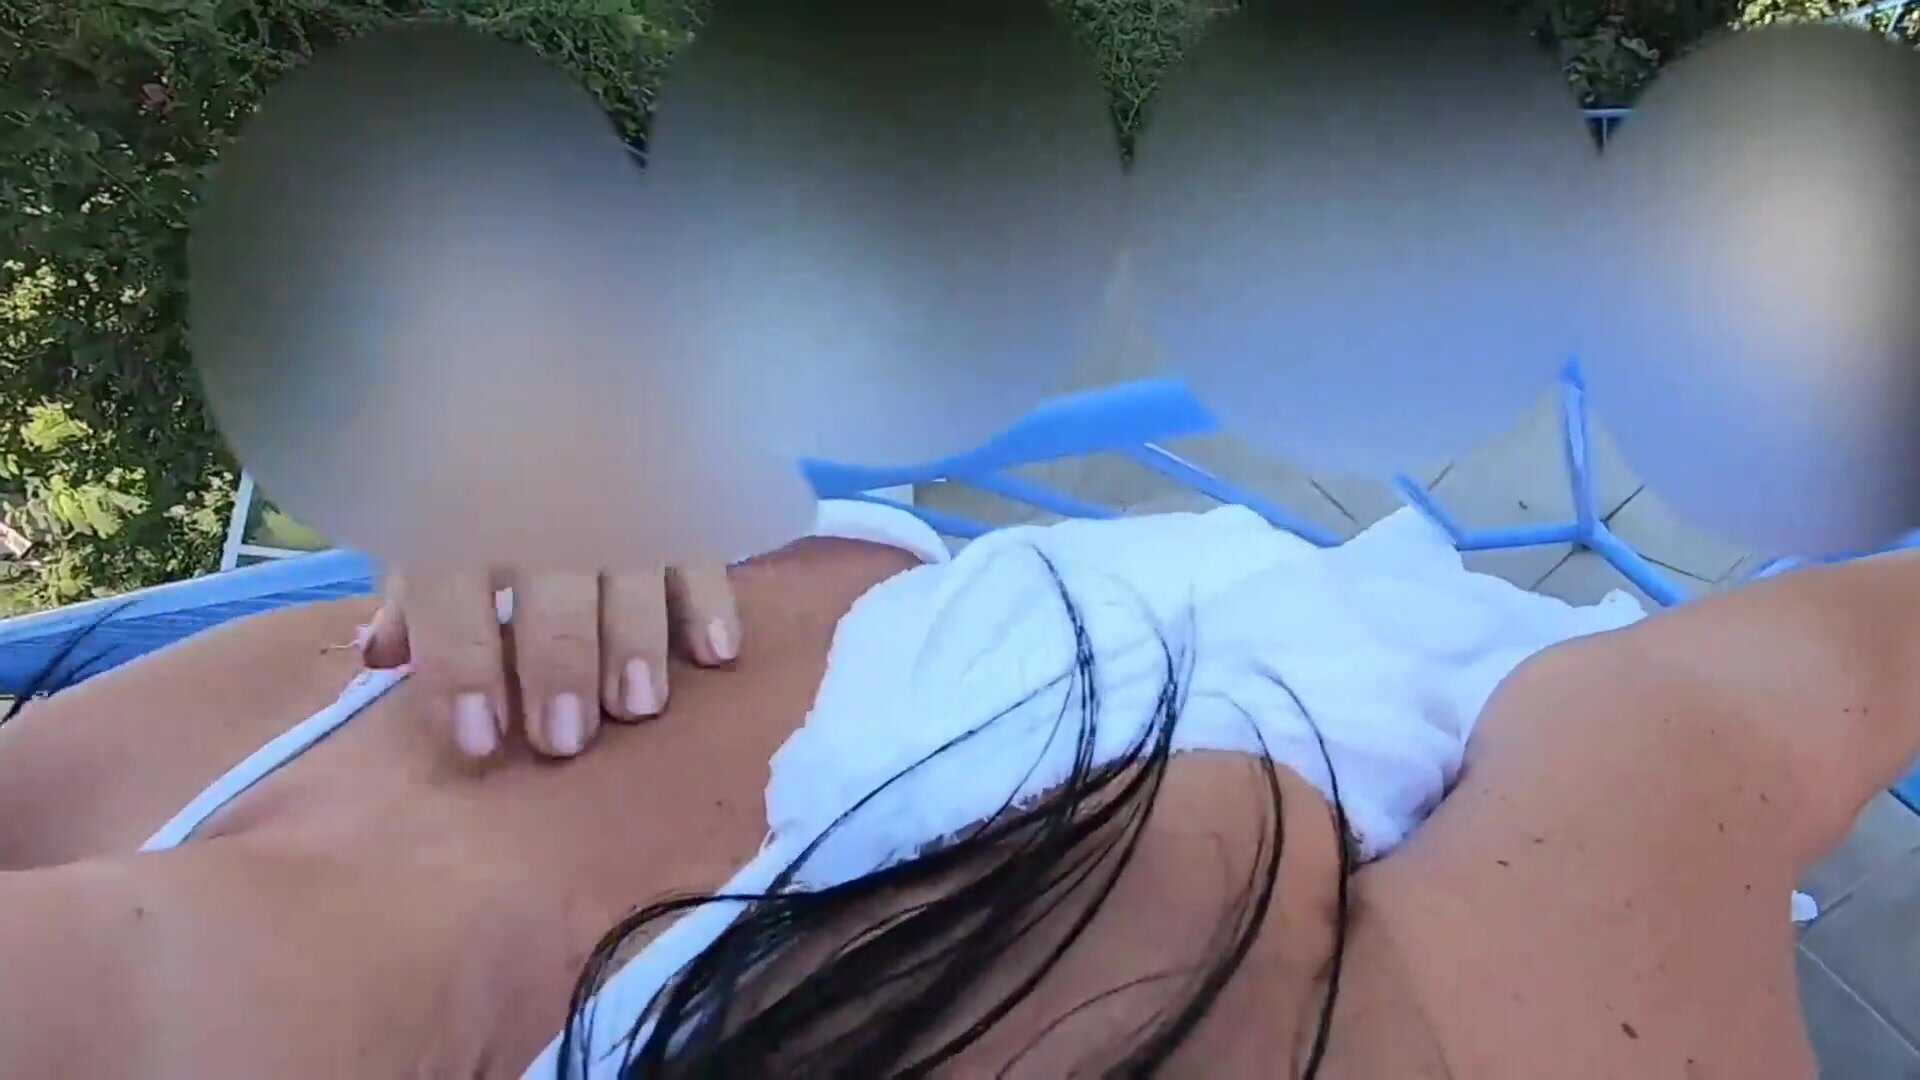 Duitse vrouw anale seks op het balkon in vakantie foto